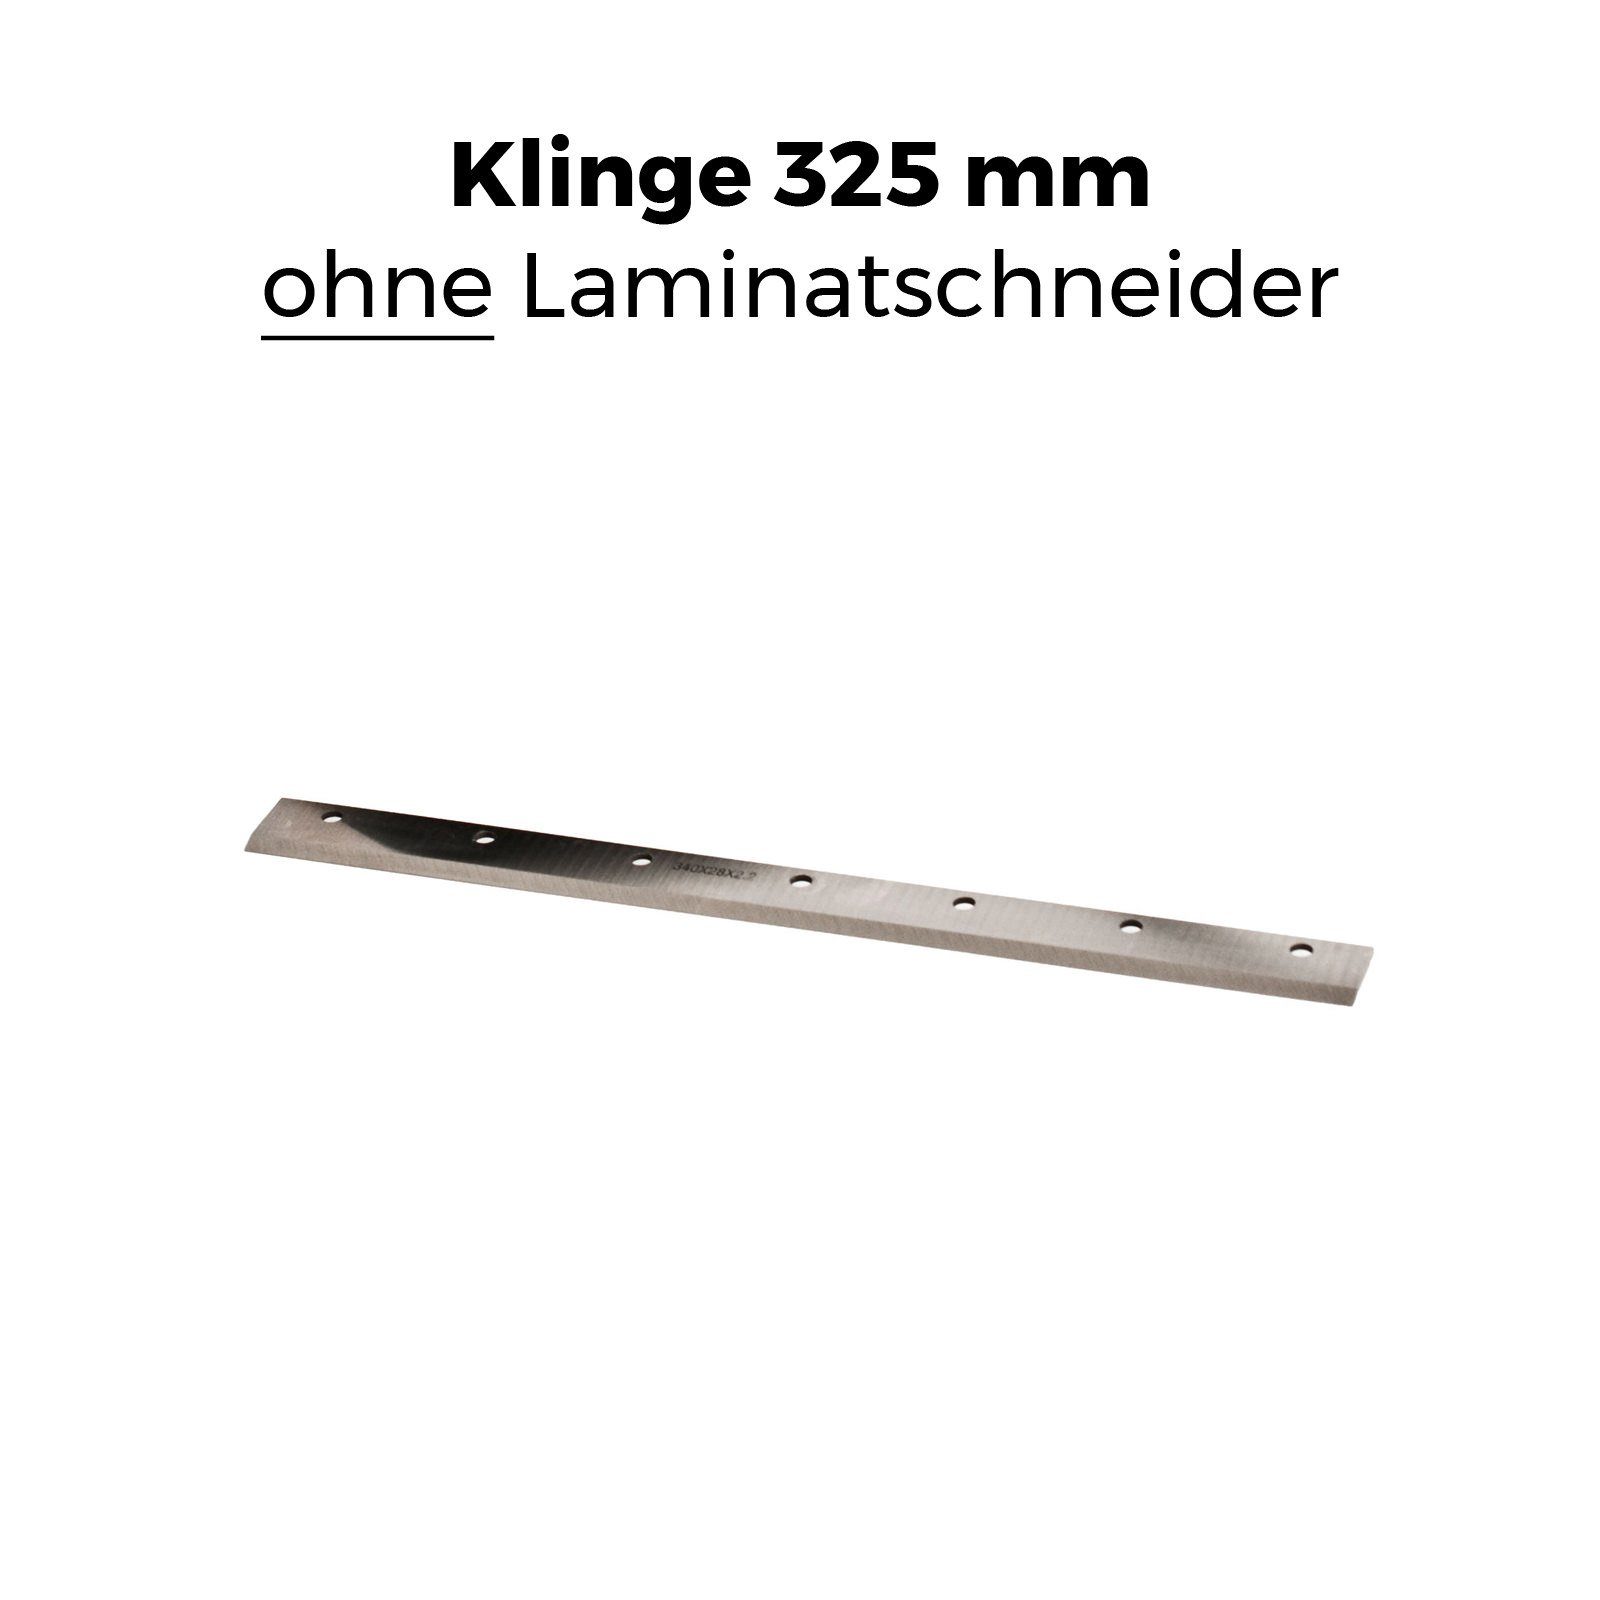 GS-TÜV passend Stahl I für gehärteter » II 32.5 Schnittbreite: cm, » Laminatschneider geprüft mm in », Modell 325 max. + Ersatzklinge BAUTEC